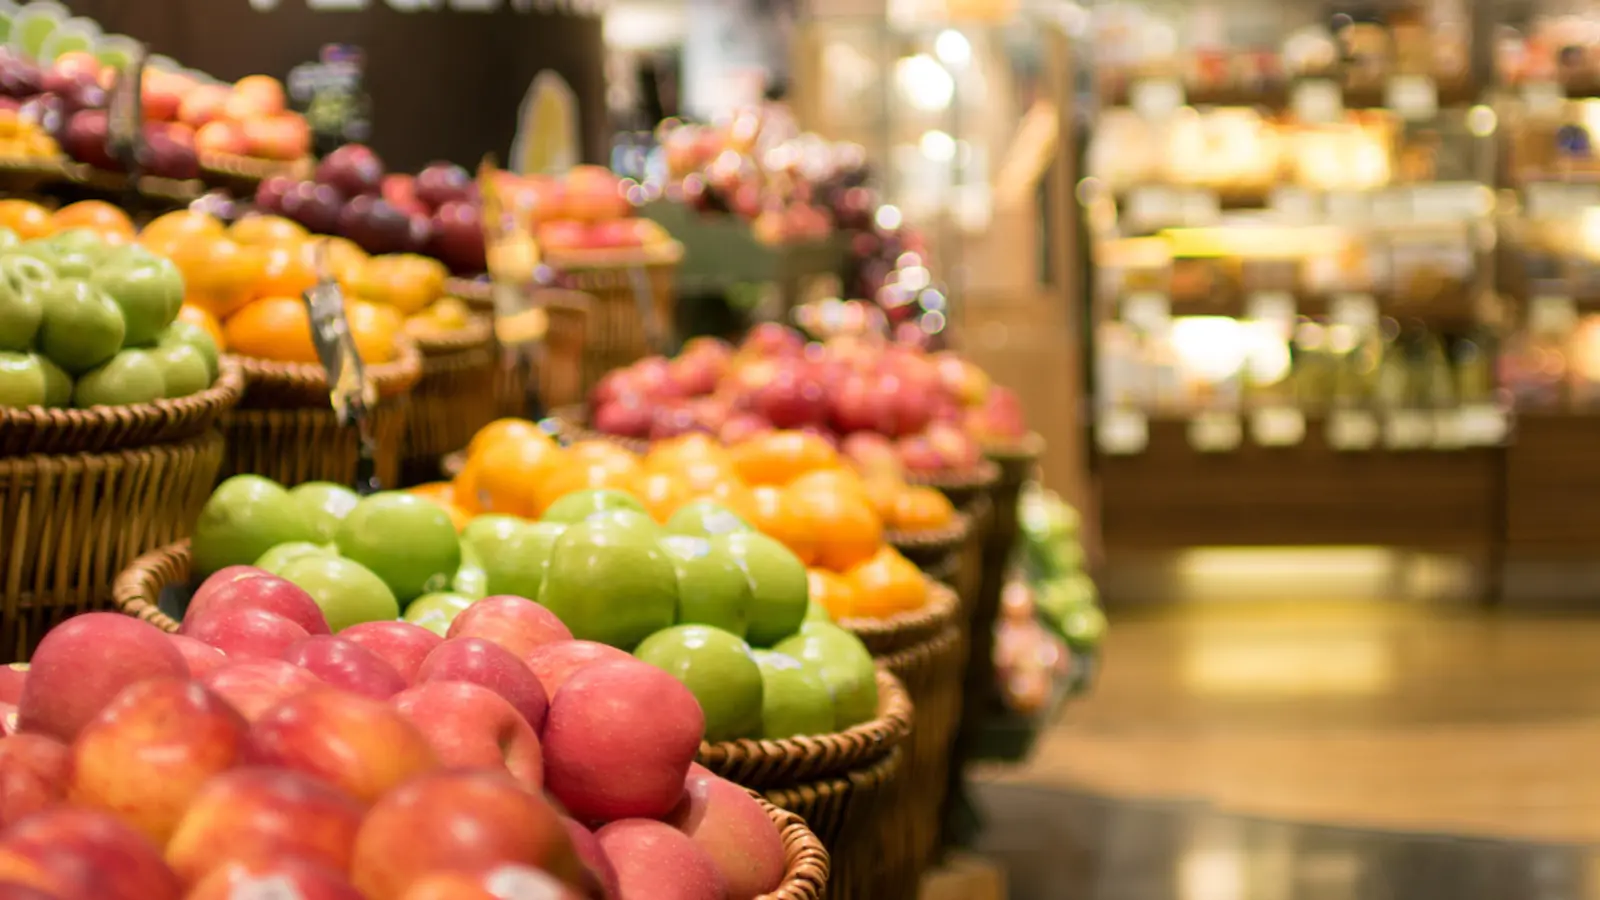 Rappel de produit et mise en garde: cessez de consommer ces fruits frais vendus dans les supermarchés...